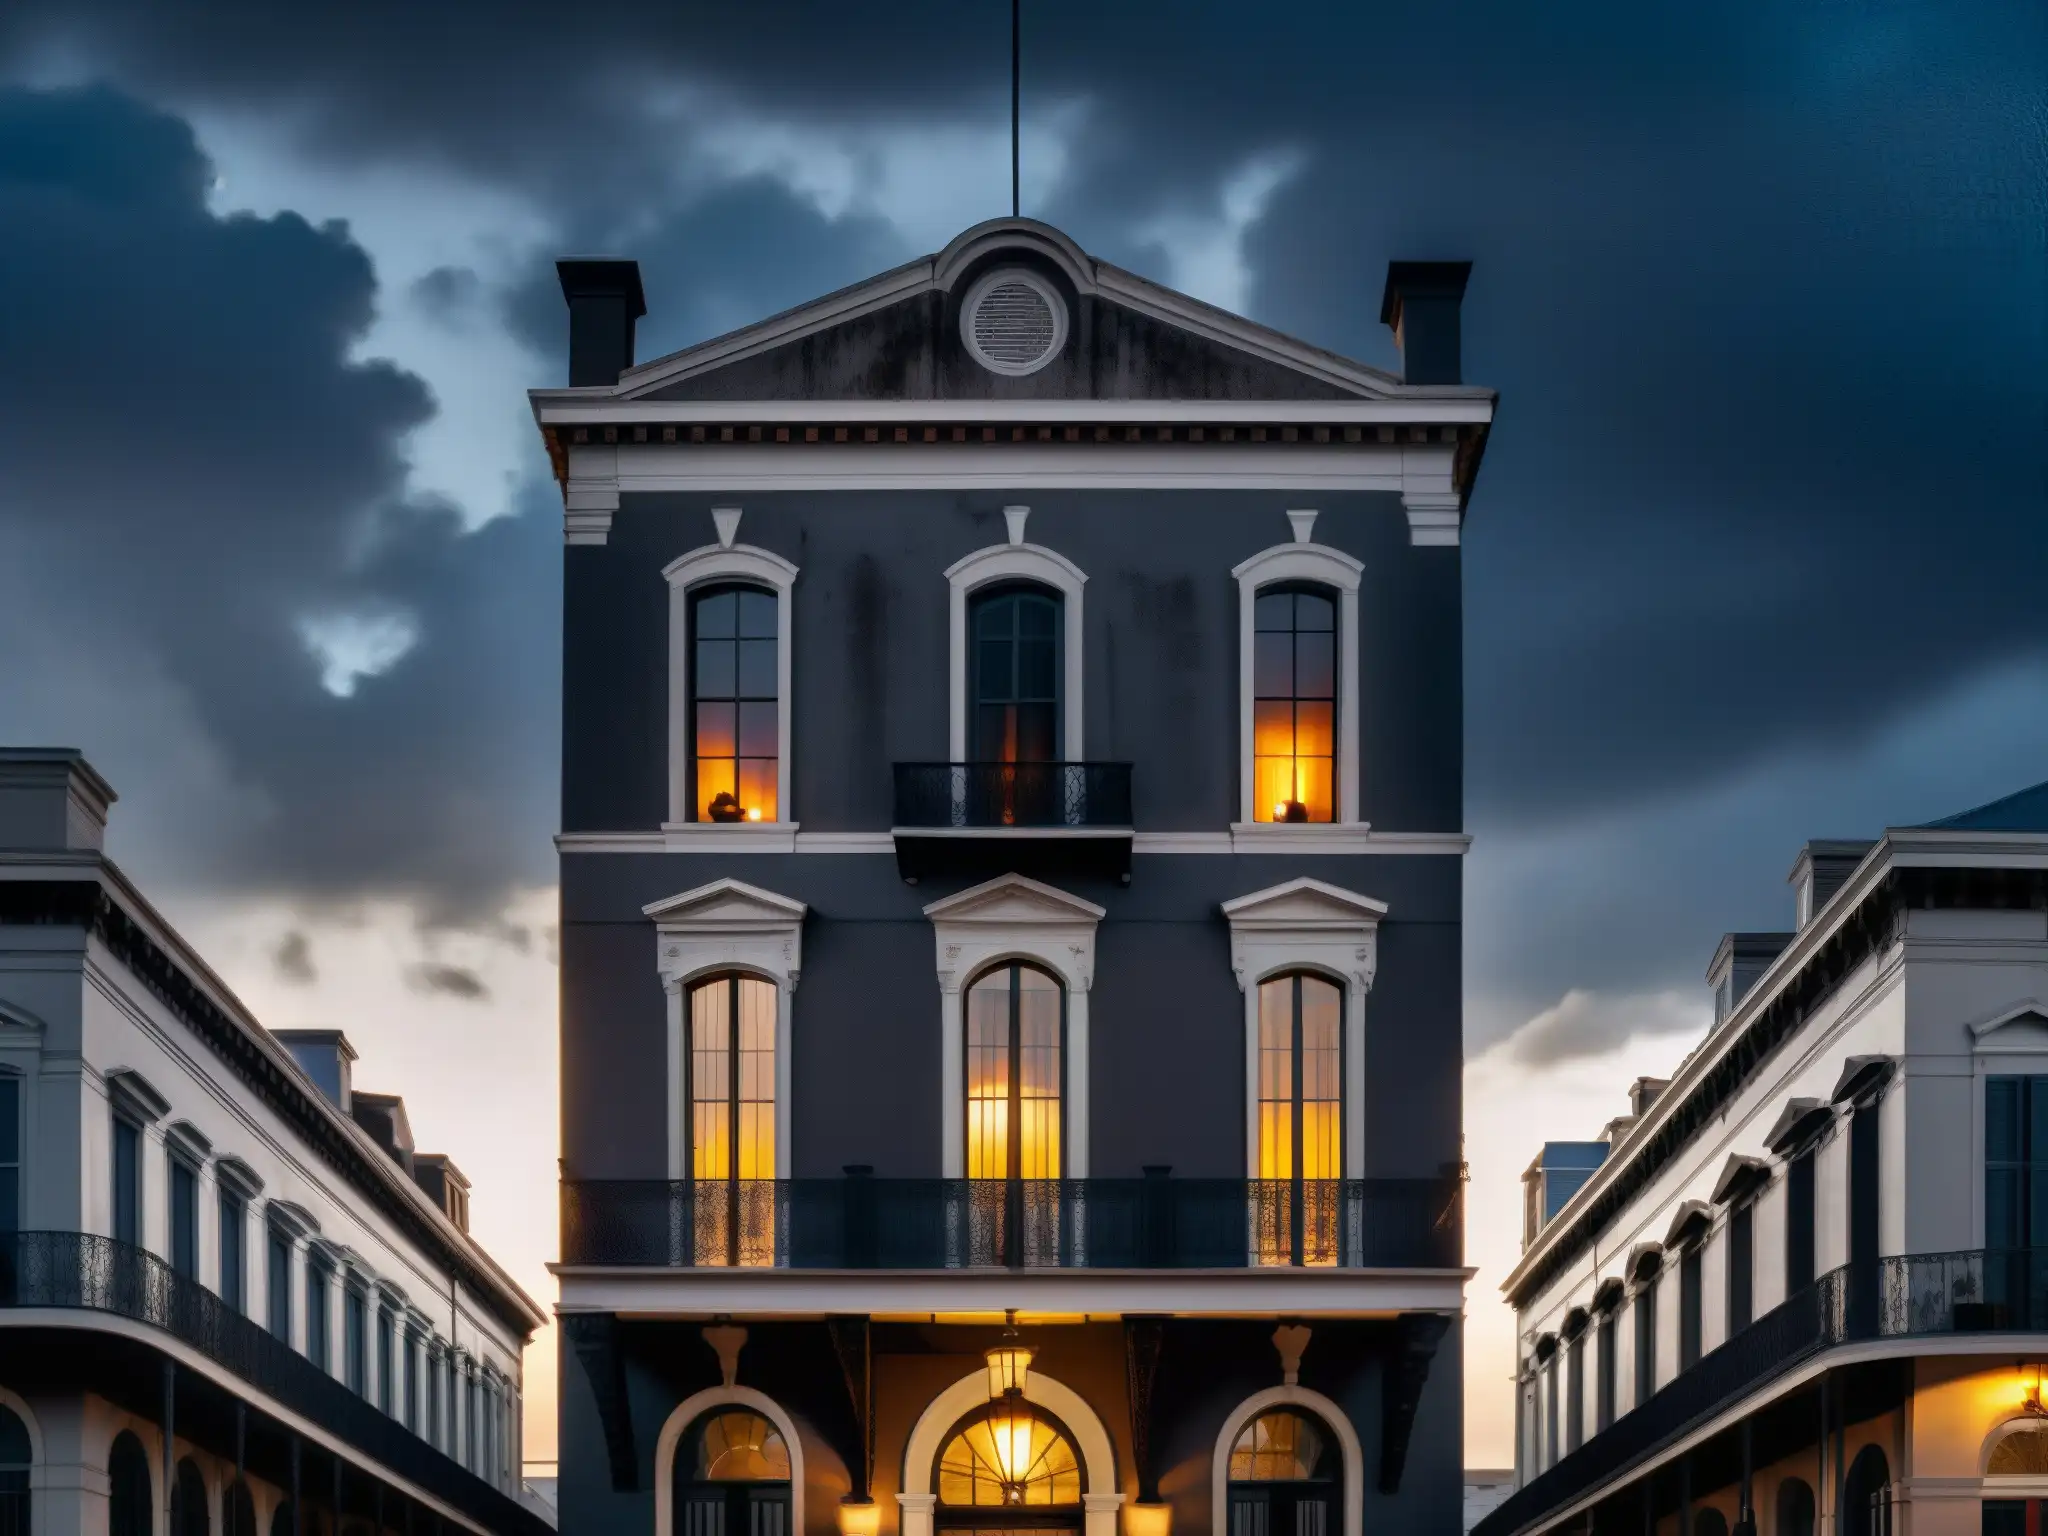 La Mansión LaLaurie: mitos y leyendas - Imponente mansión gótica en Nueva Orleans, con detalles lúgubres y atmósfera inquietante